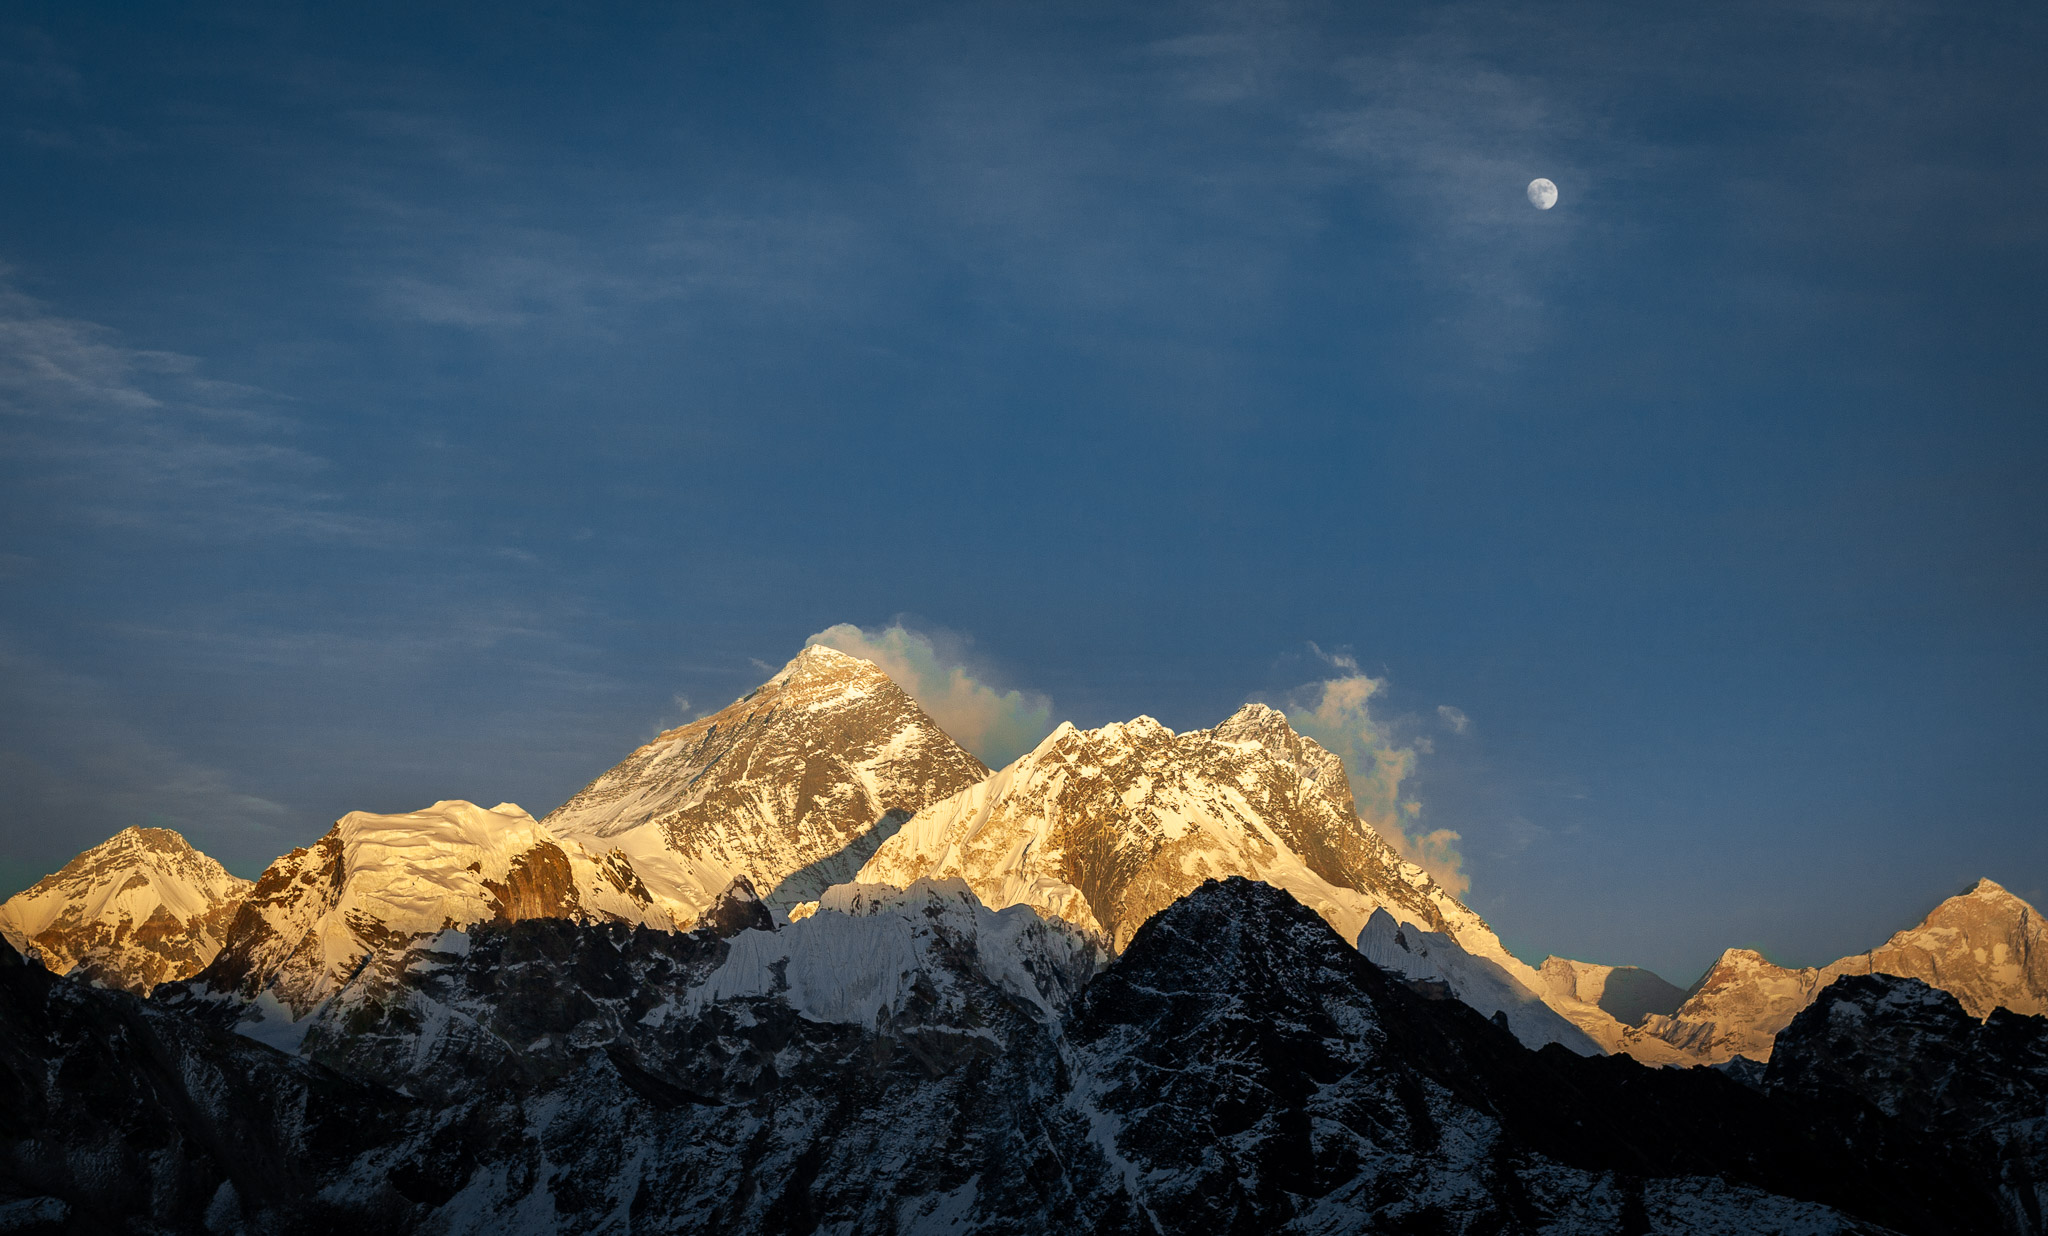 Last light & moonrise over Everest